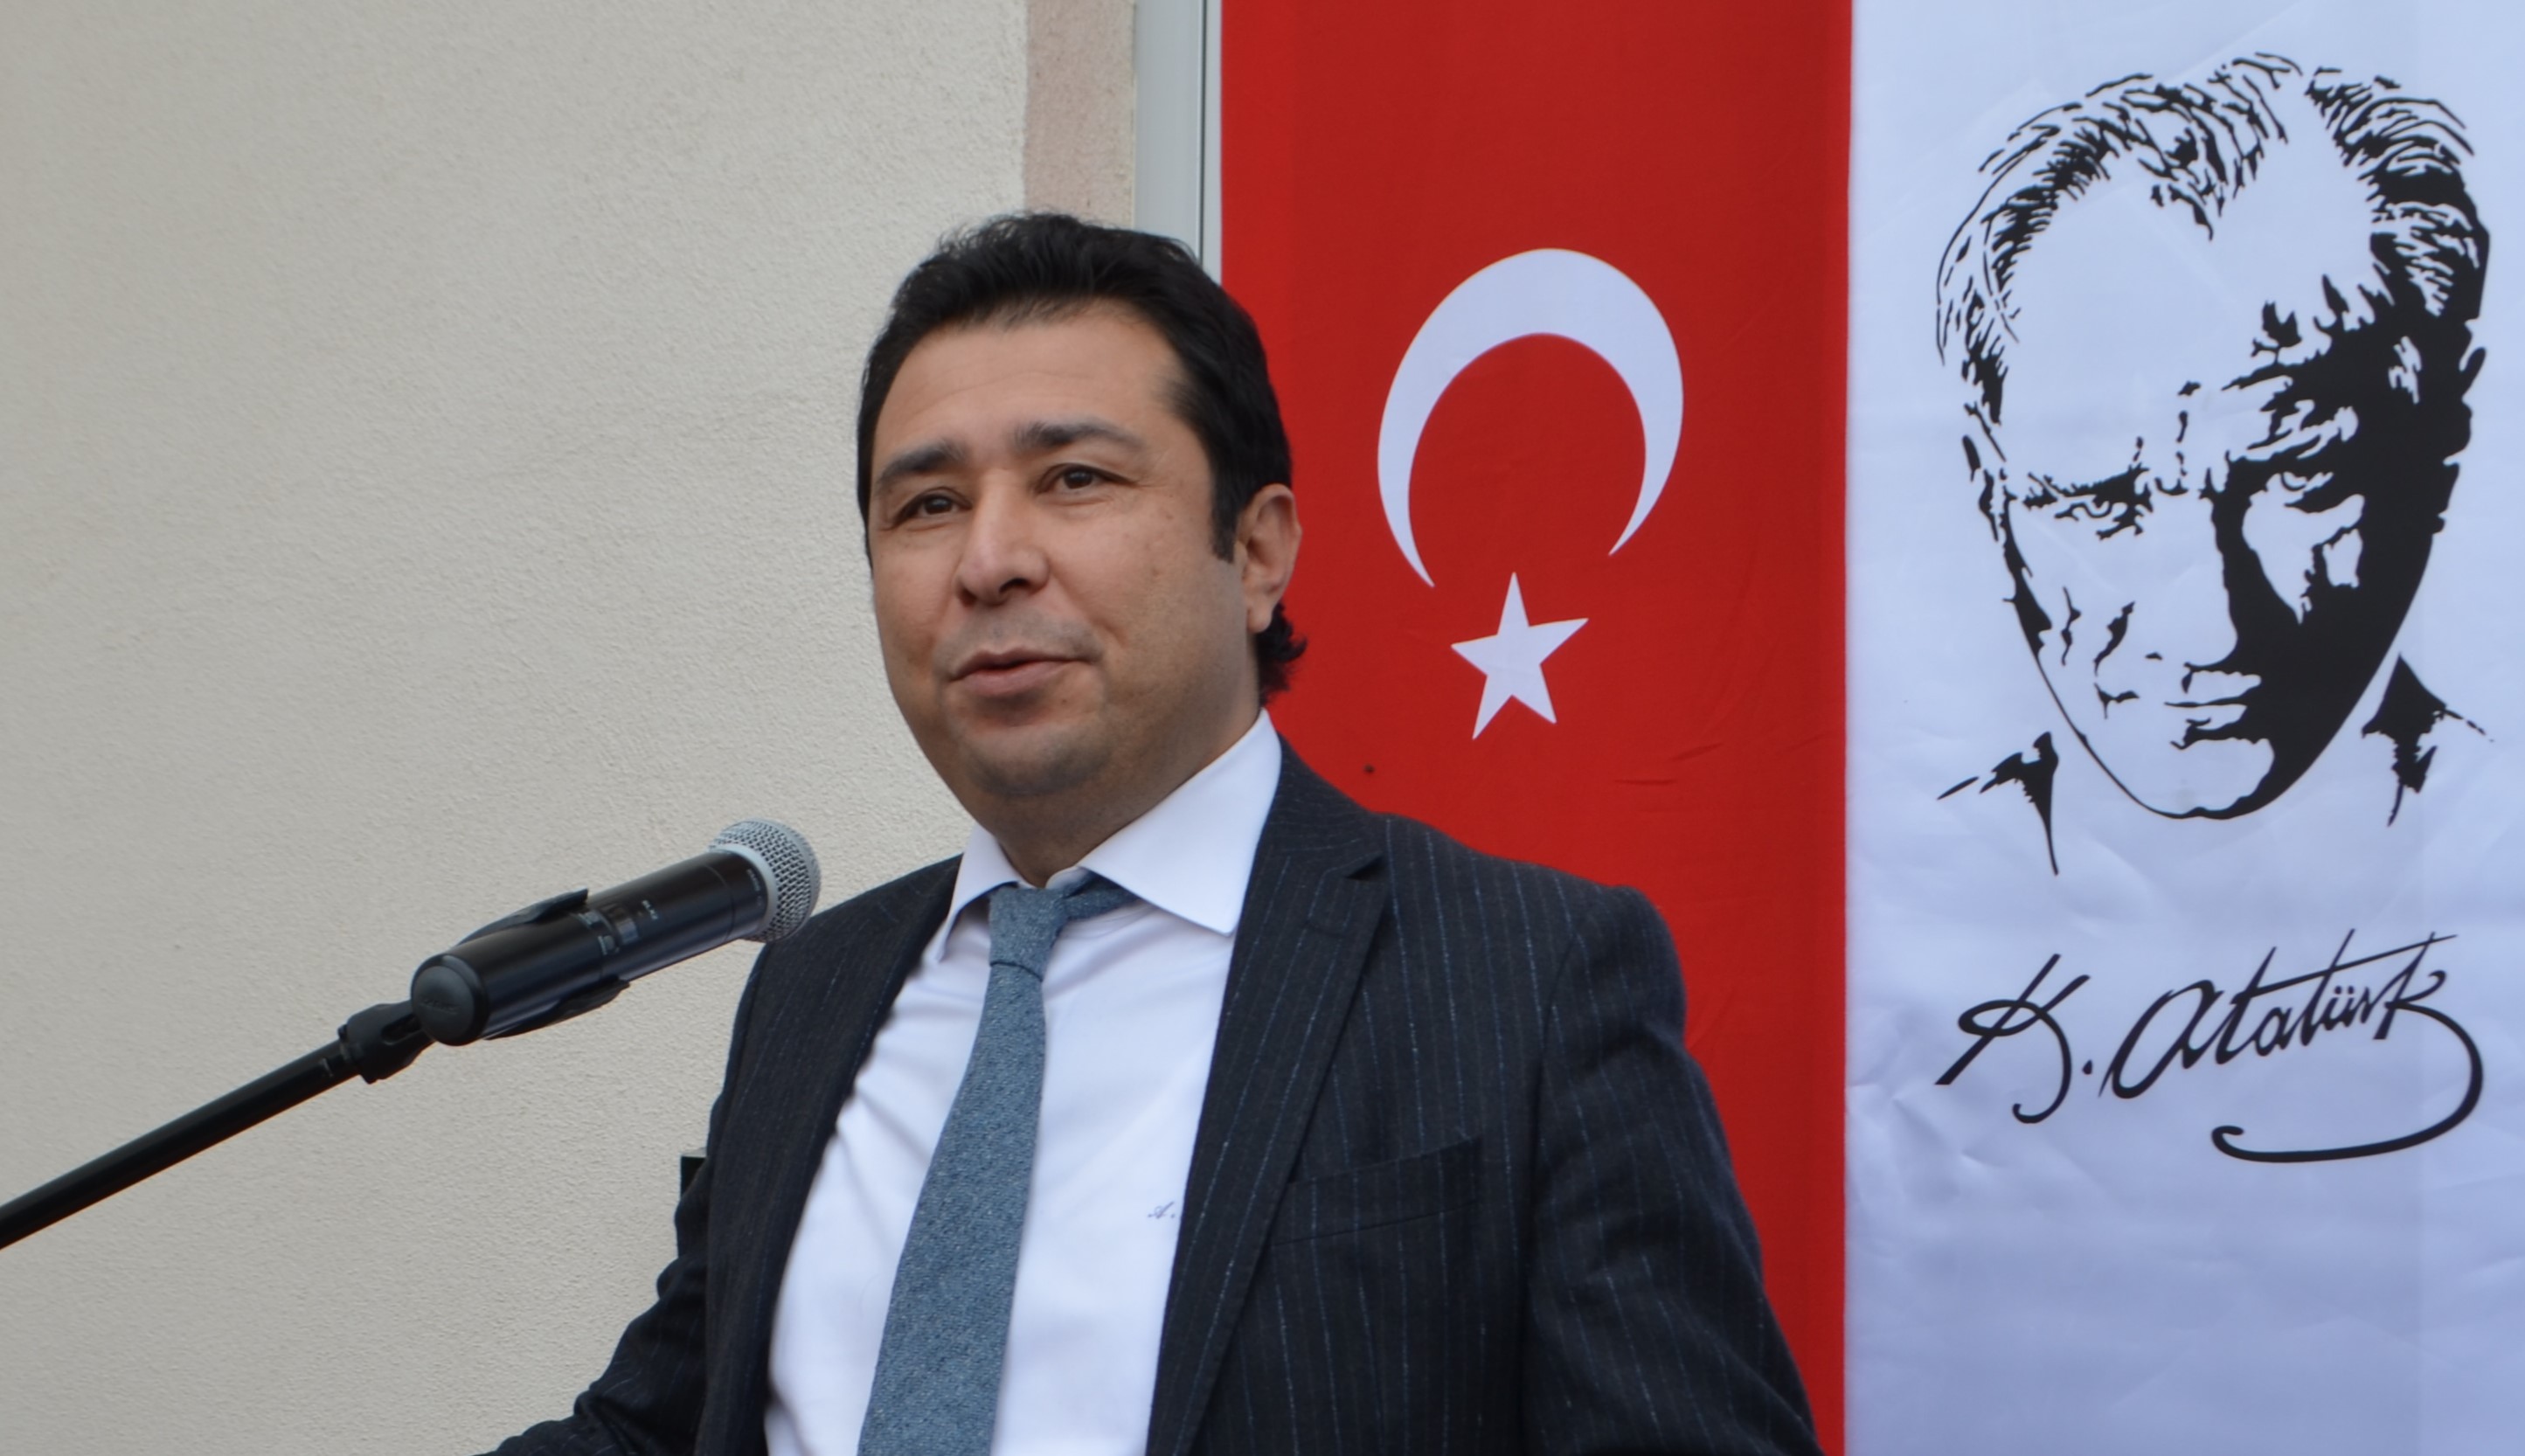 Vali Yardımcısı Ahmet Arık